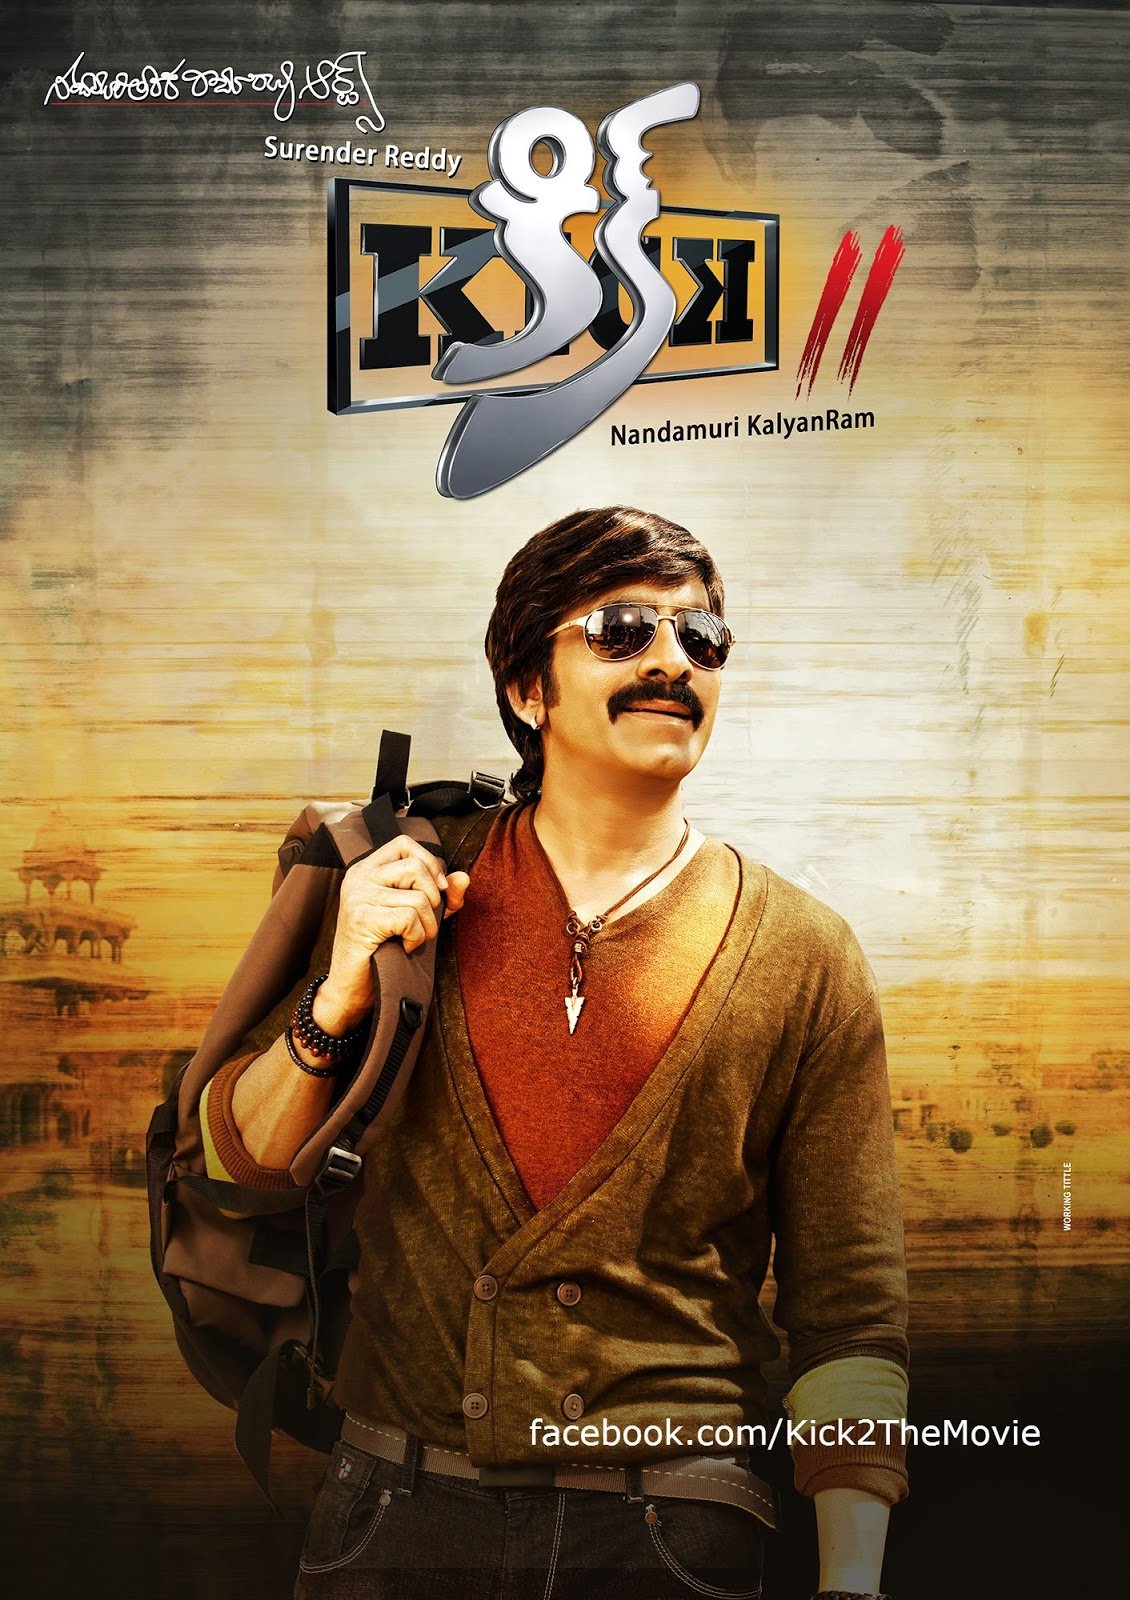 L'affiche originale du film Kick 2 en Telugu